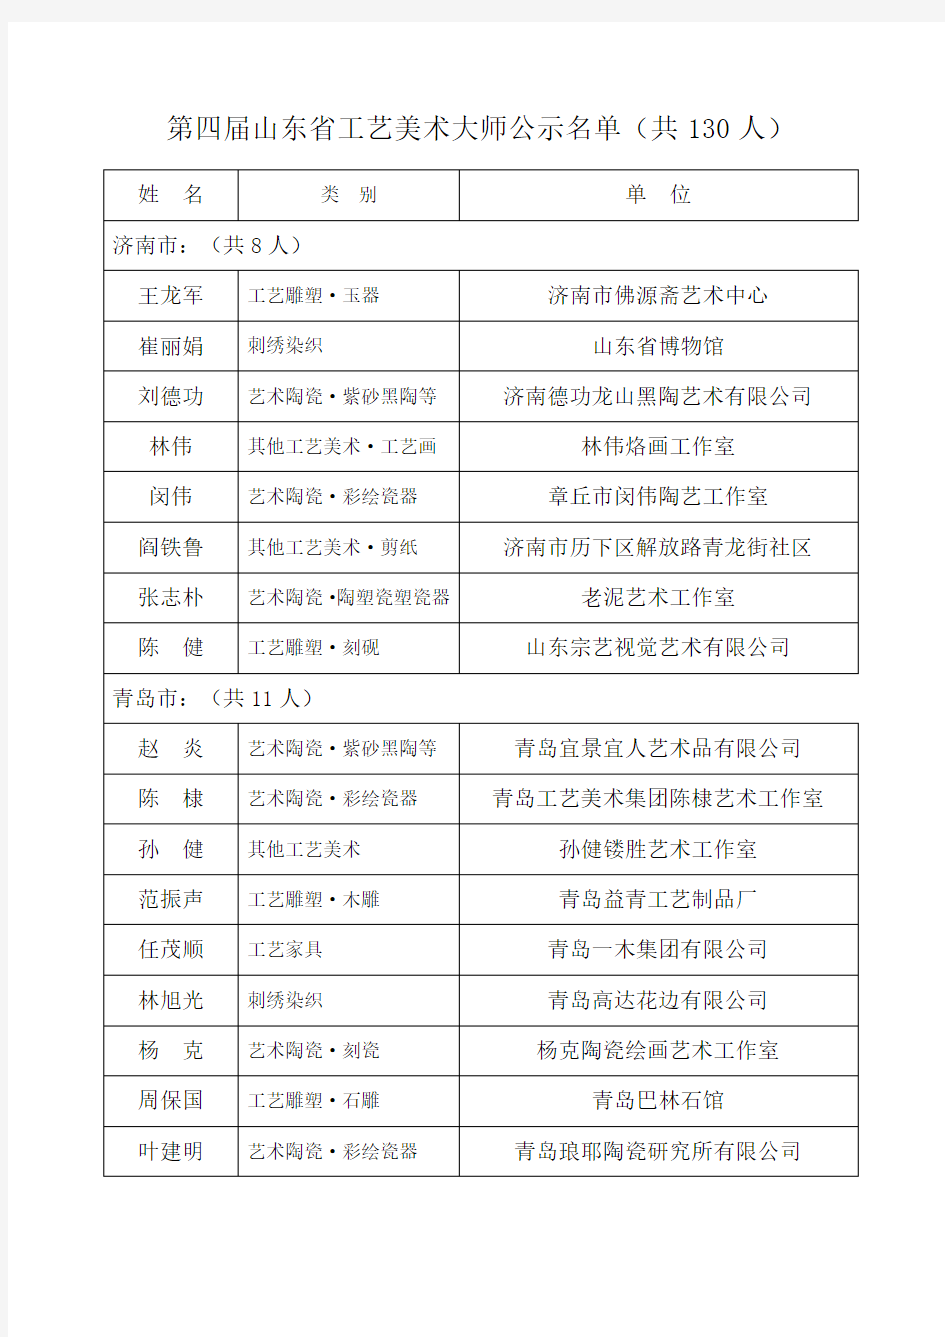 第四届山东省工艺美术大师公示名单(共130人)